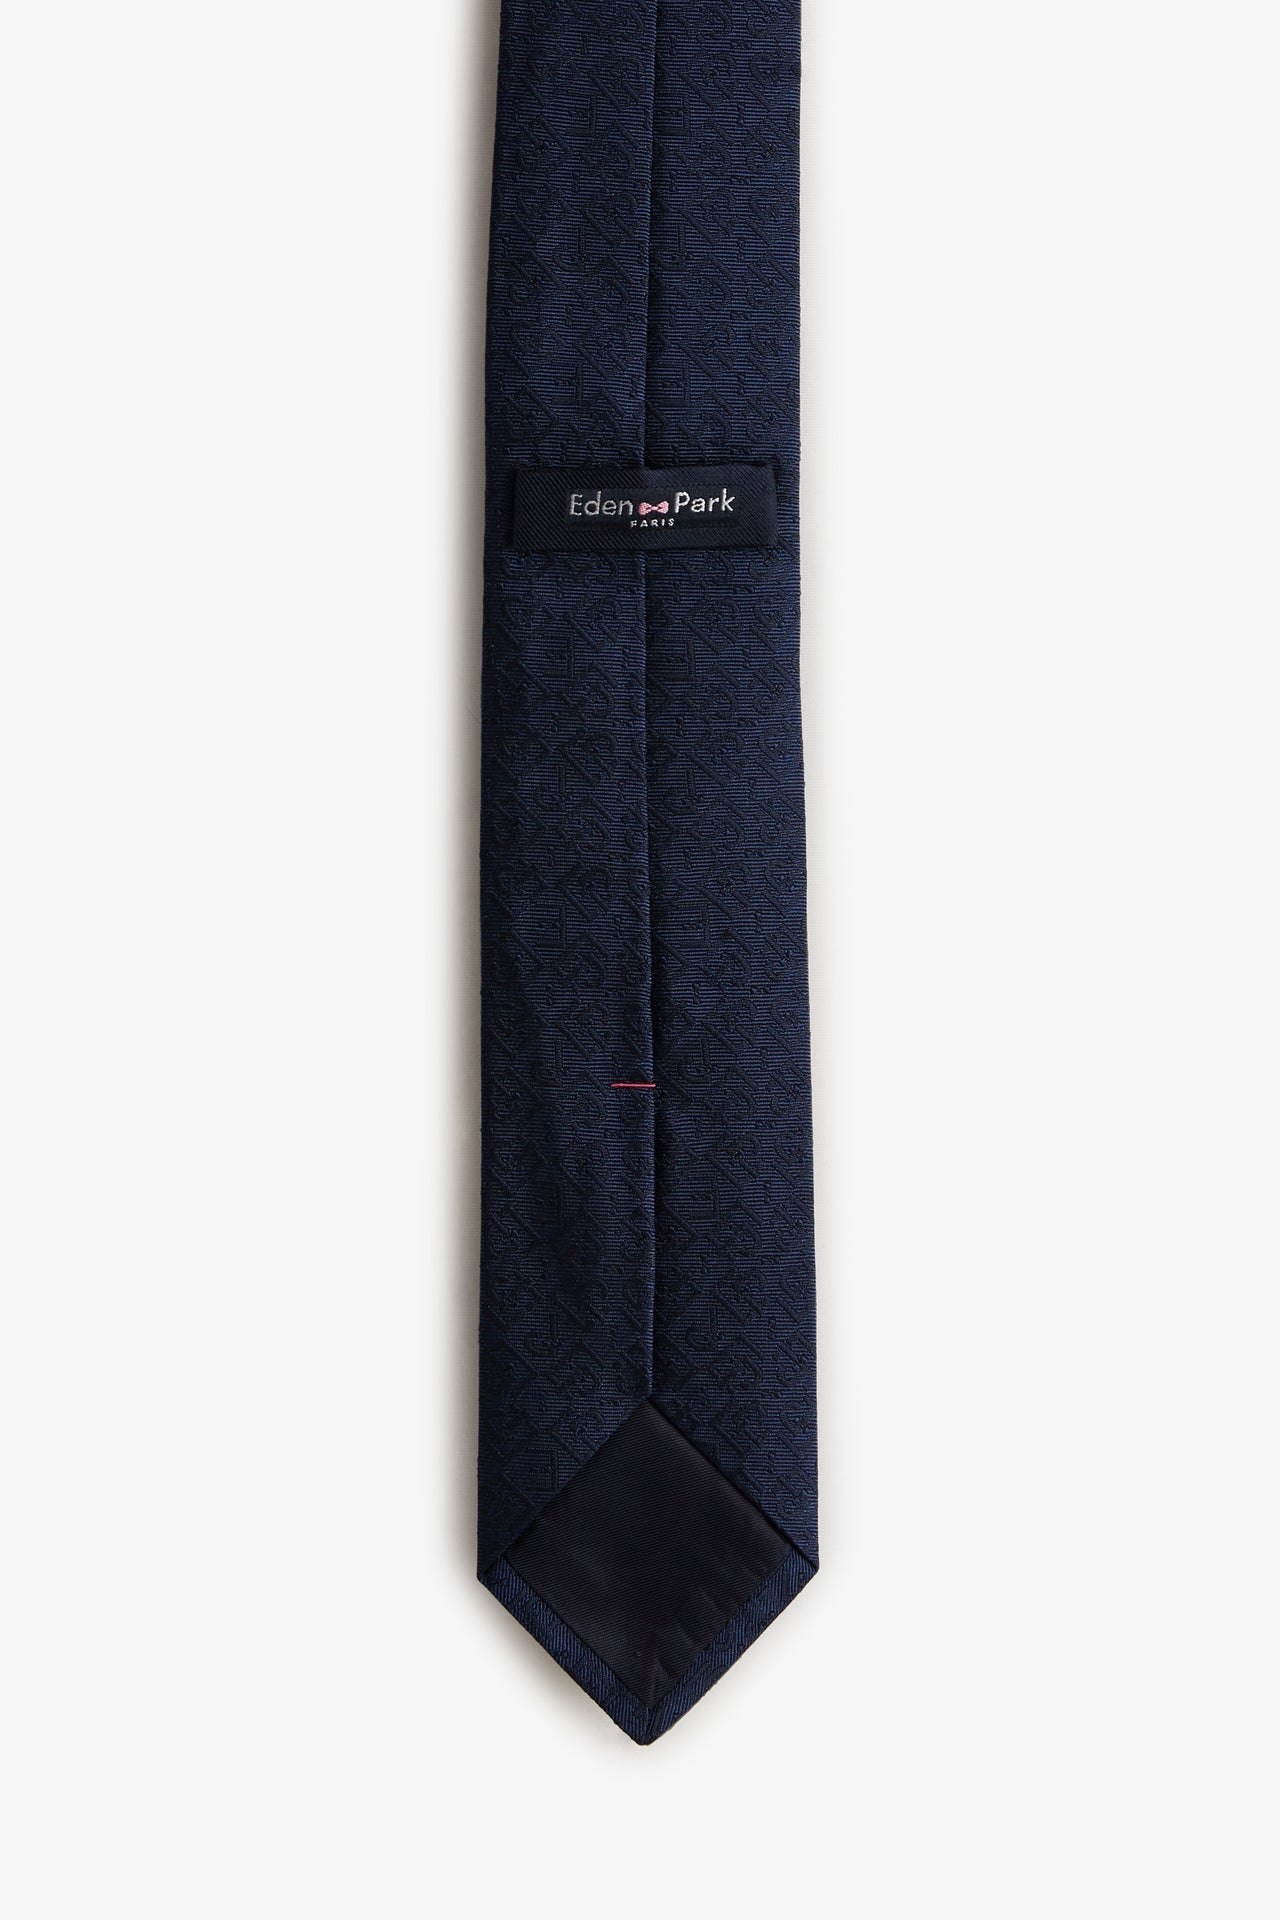 Cravate bleu foncé à micros-motifs exclusifs - Image 2